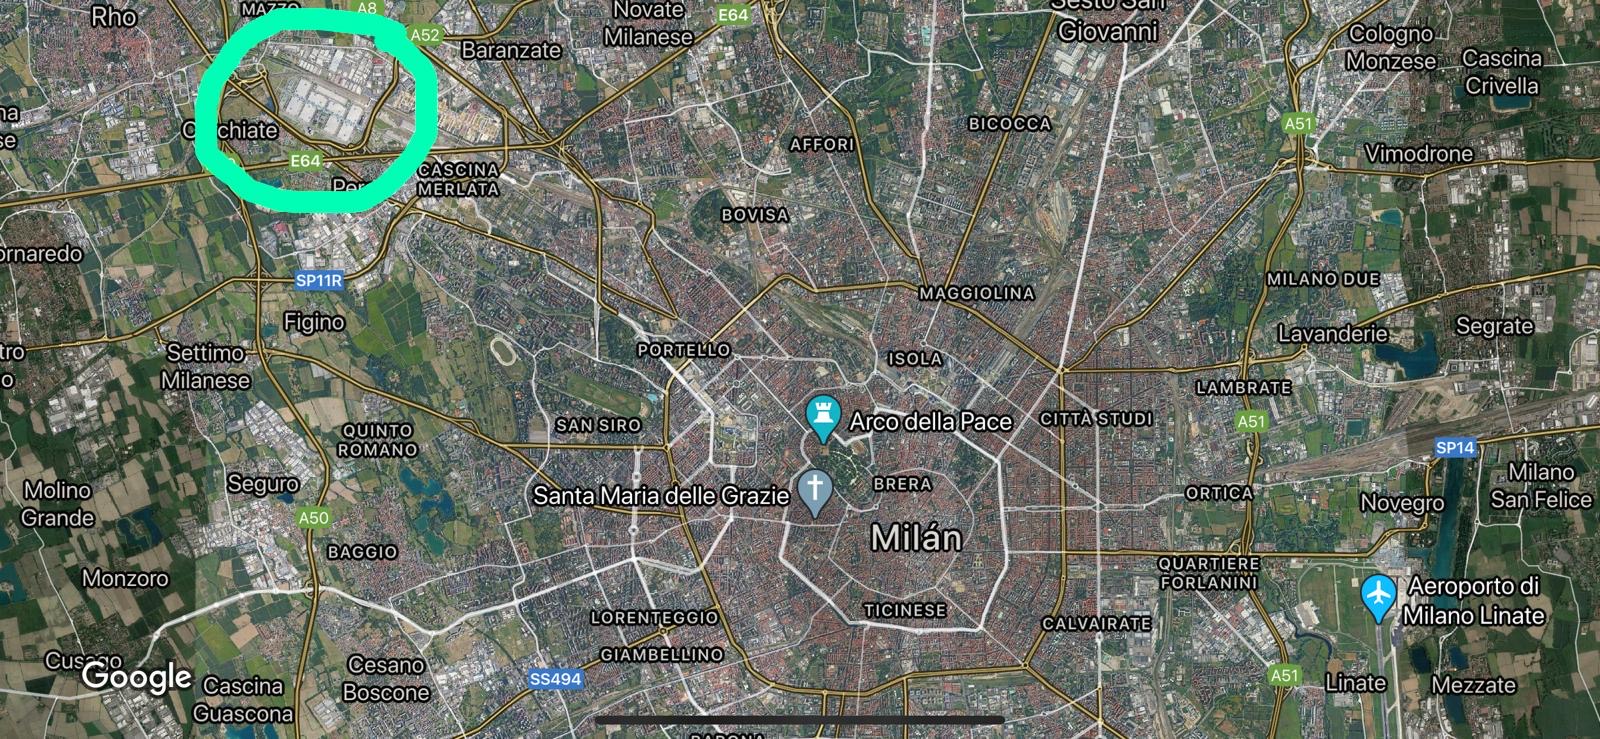 Milan fair location